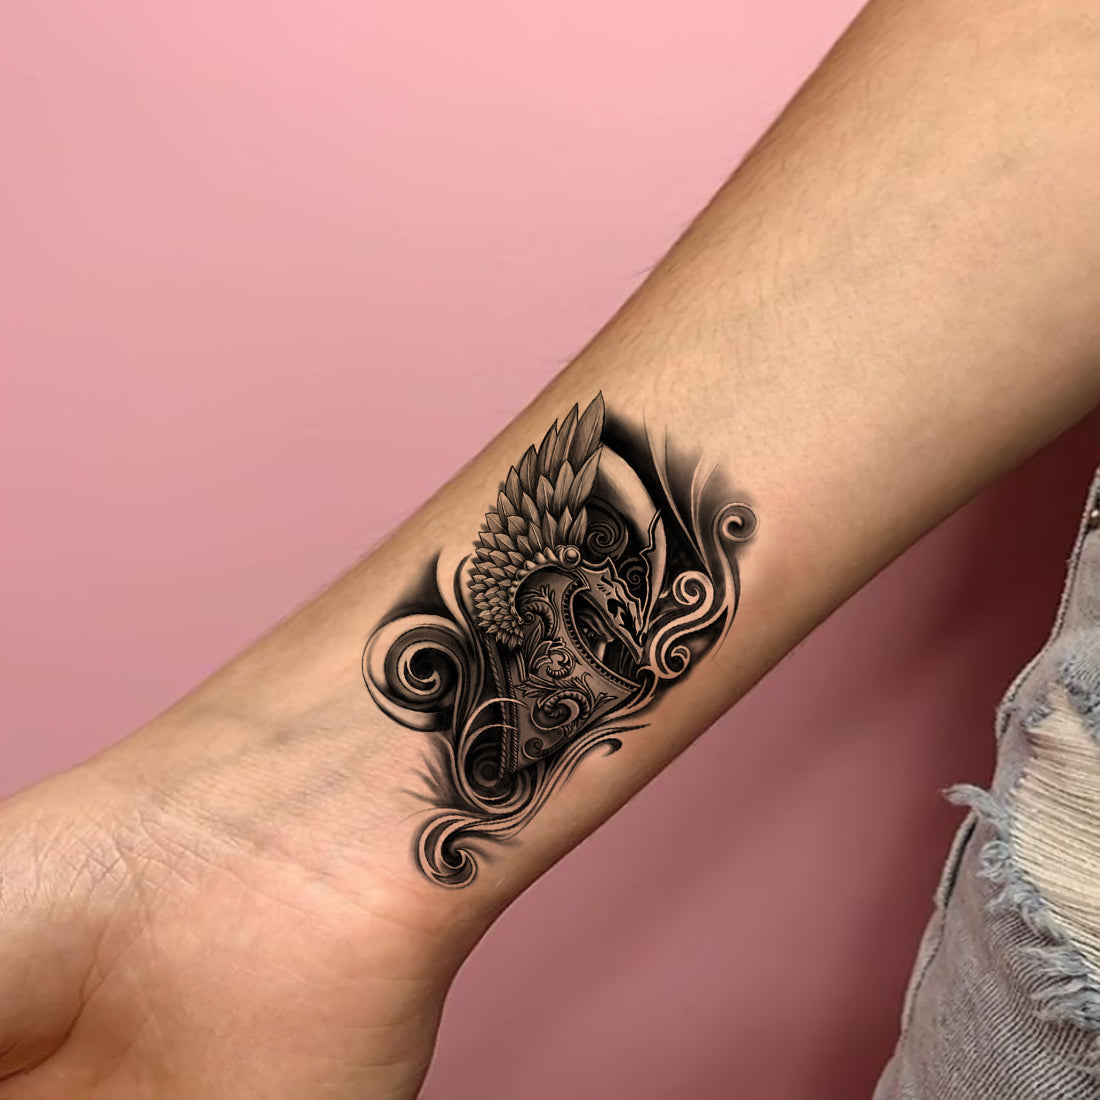 Spartan Helmet Temporary Tattoo, Fake Tattoo, Black Tattoo, Tiny Tattoo,  Tattoo Sticker, Hand Draw Design, Flash Tattoo, Tattoo Lovers Gift - Etsy